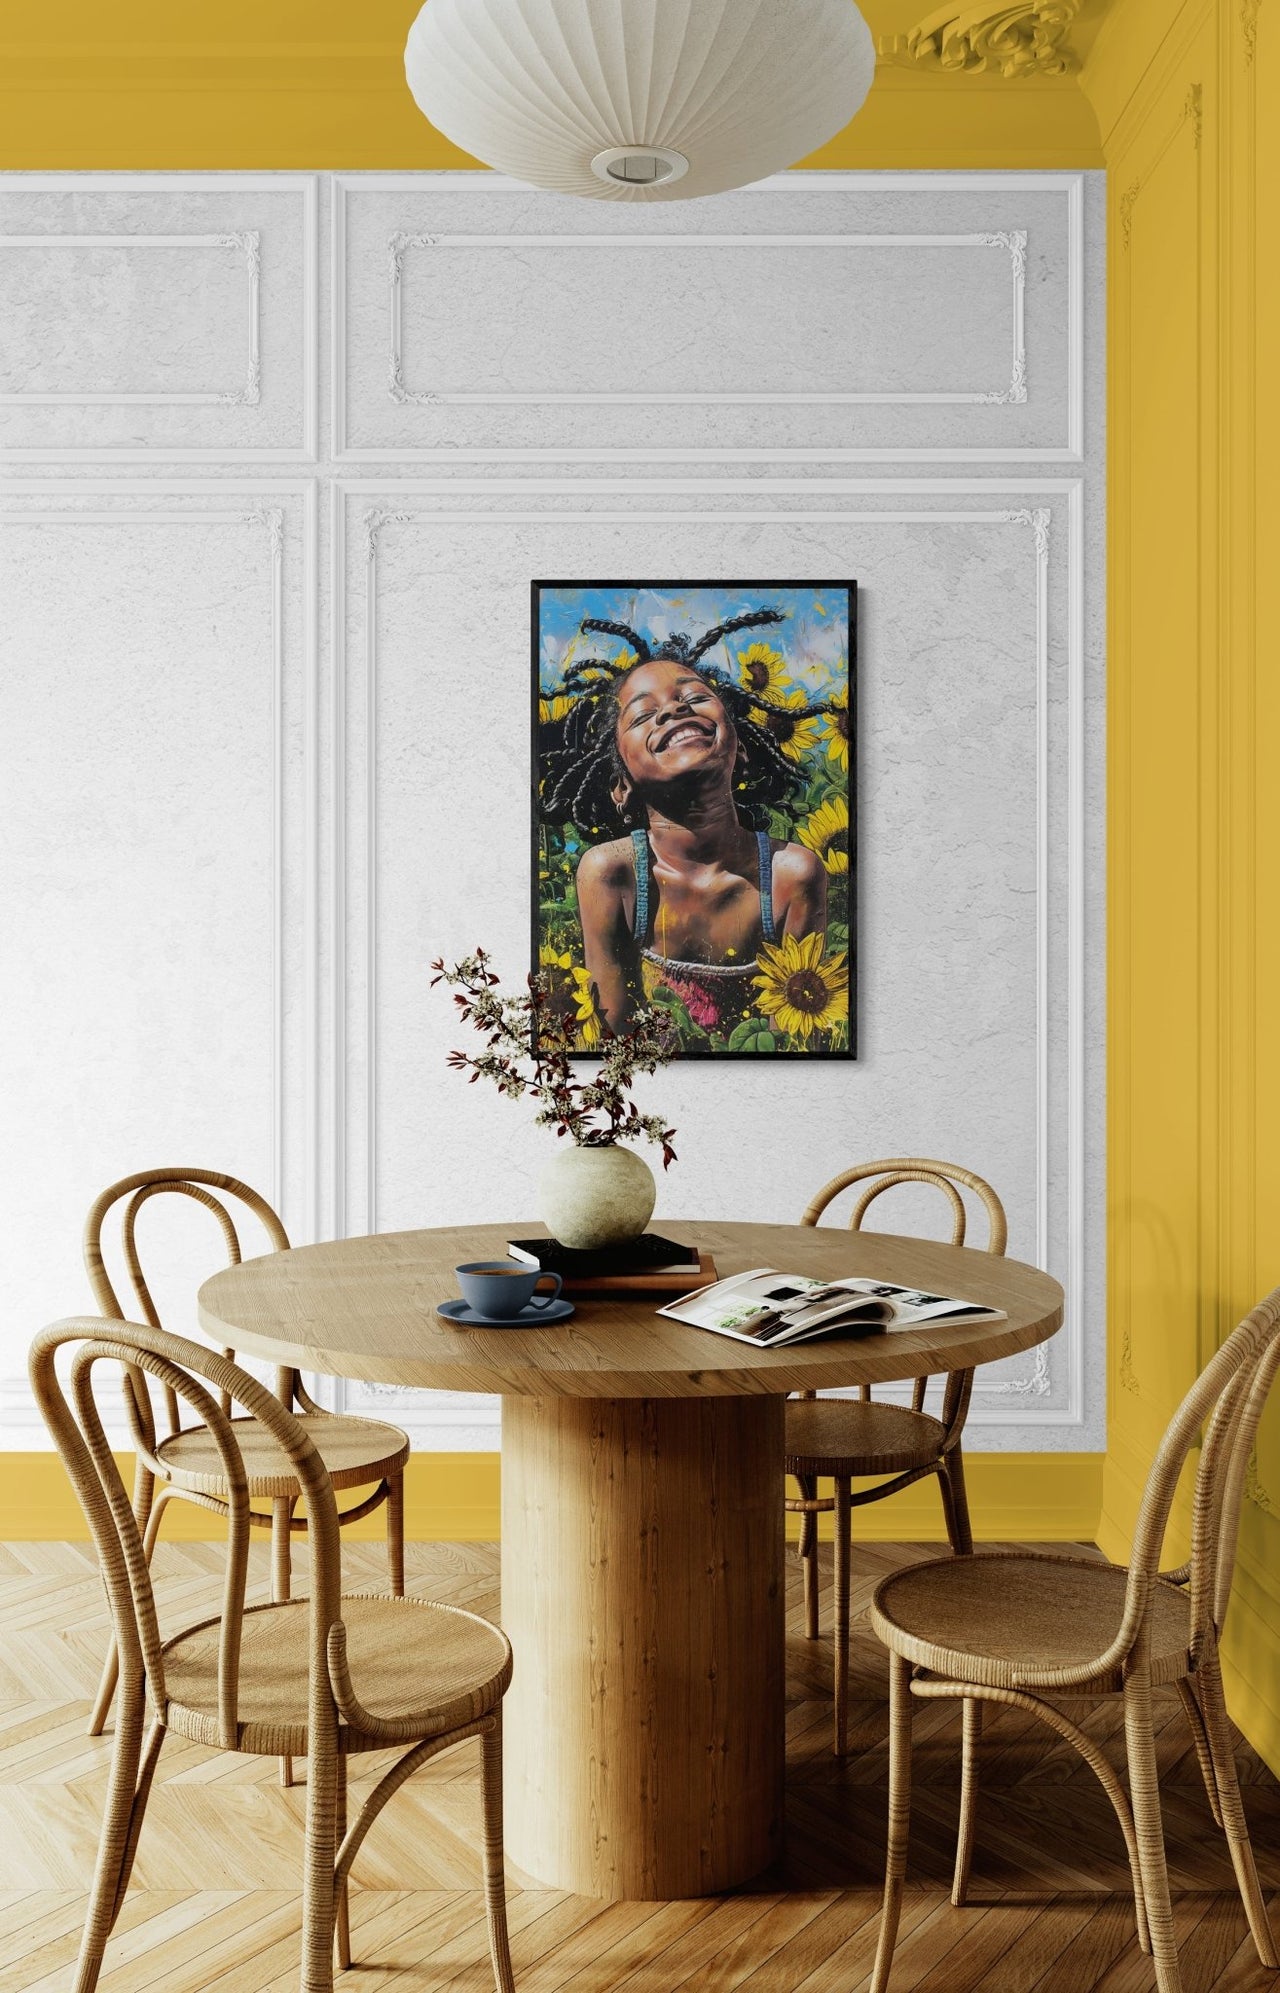 oyful Child Laughing Among Sunflowers, Vibrant Canvas Wall Art Print"